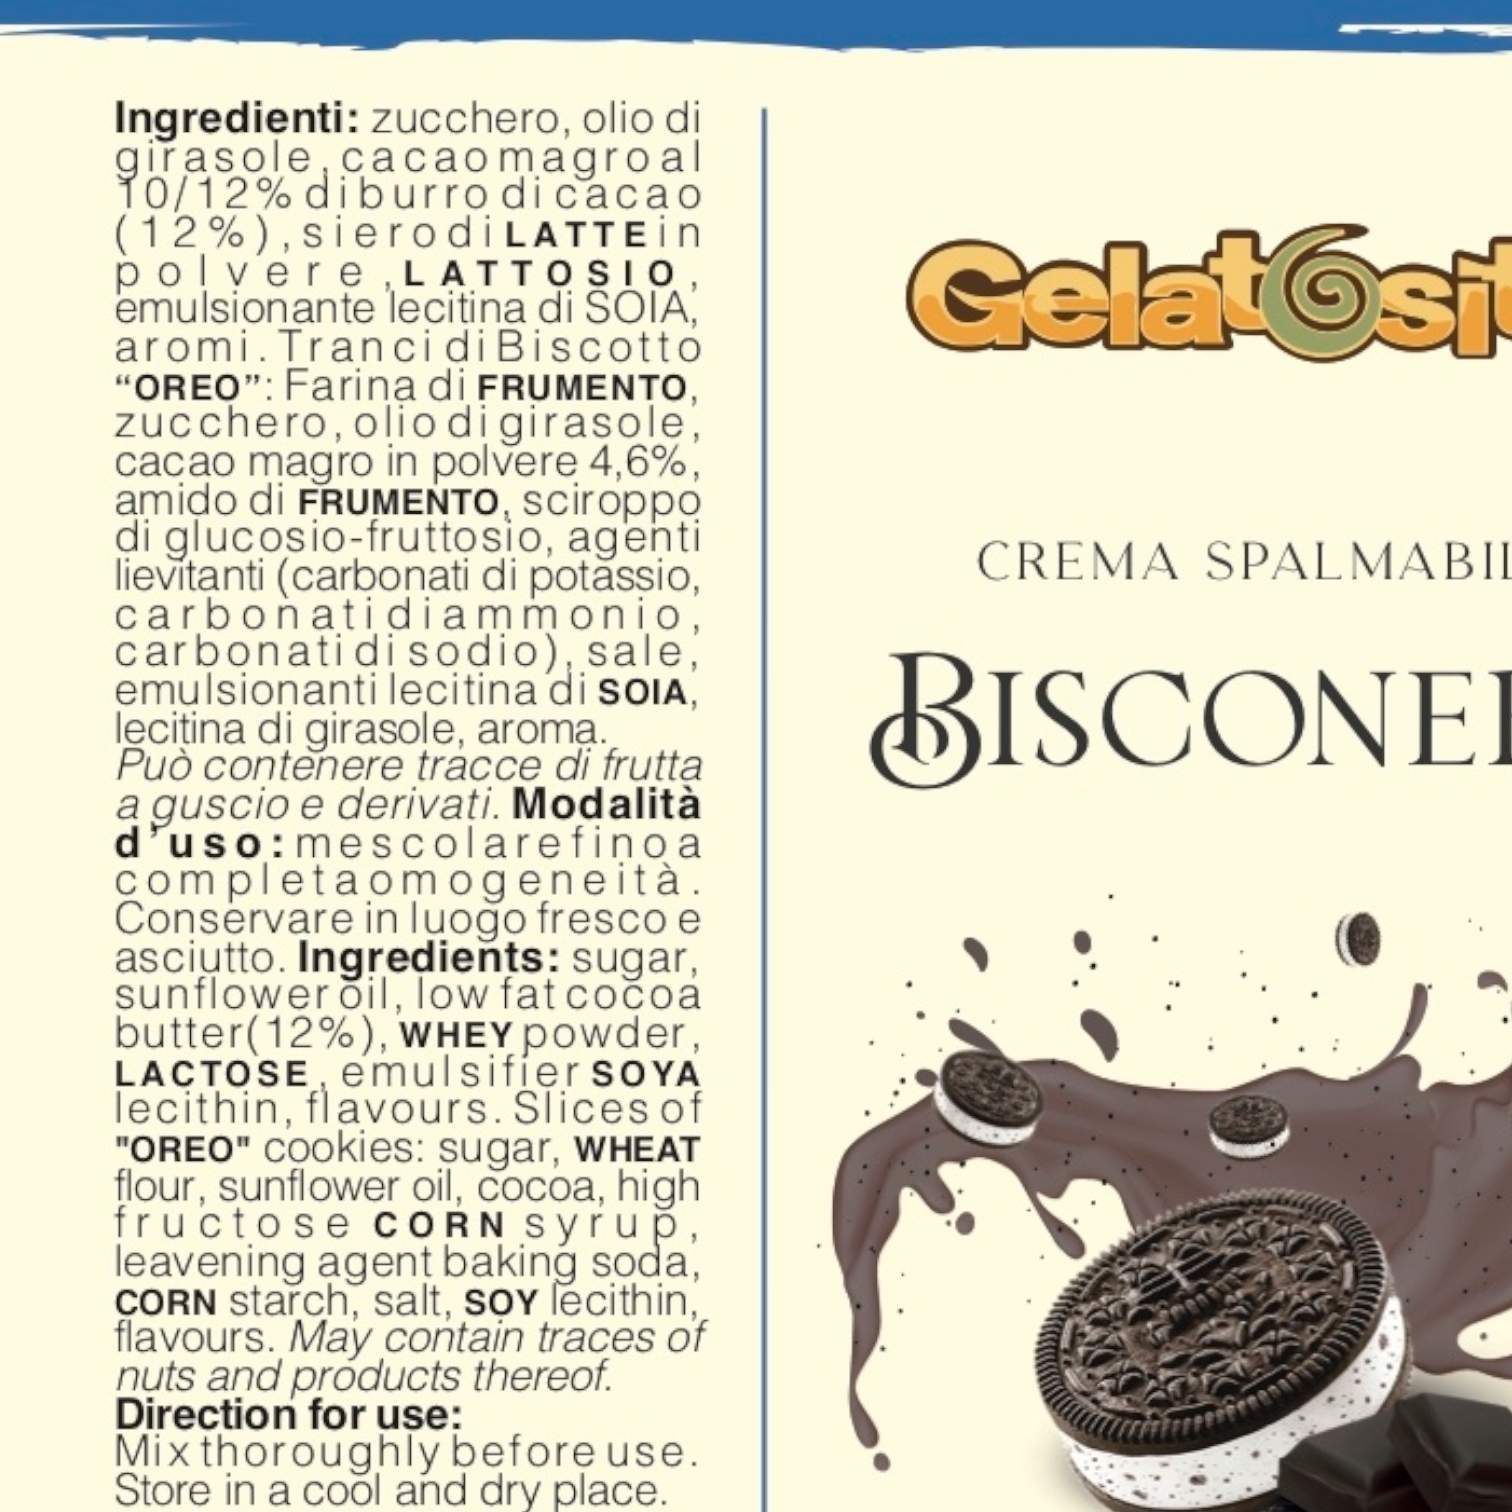 BISCONERO-Gelatosità-Bisconero